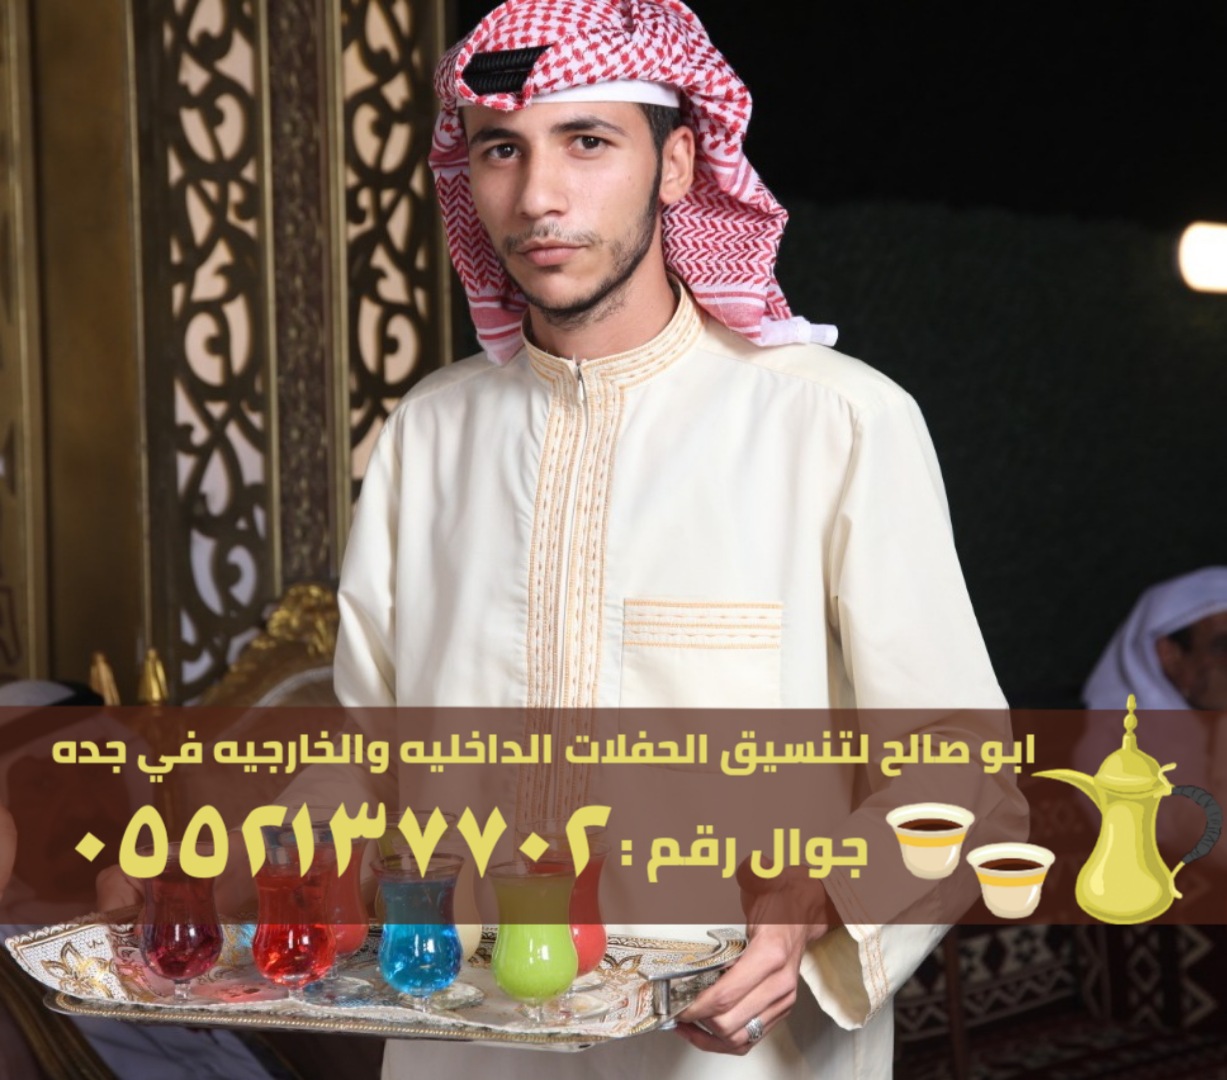 قهوجيين وصبابين قهوة في جدة, 0552137702 P_2475ihaho2